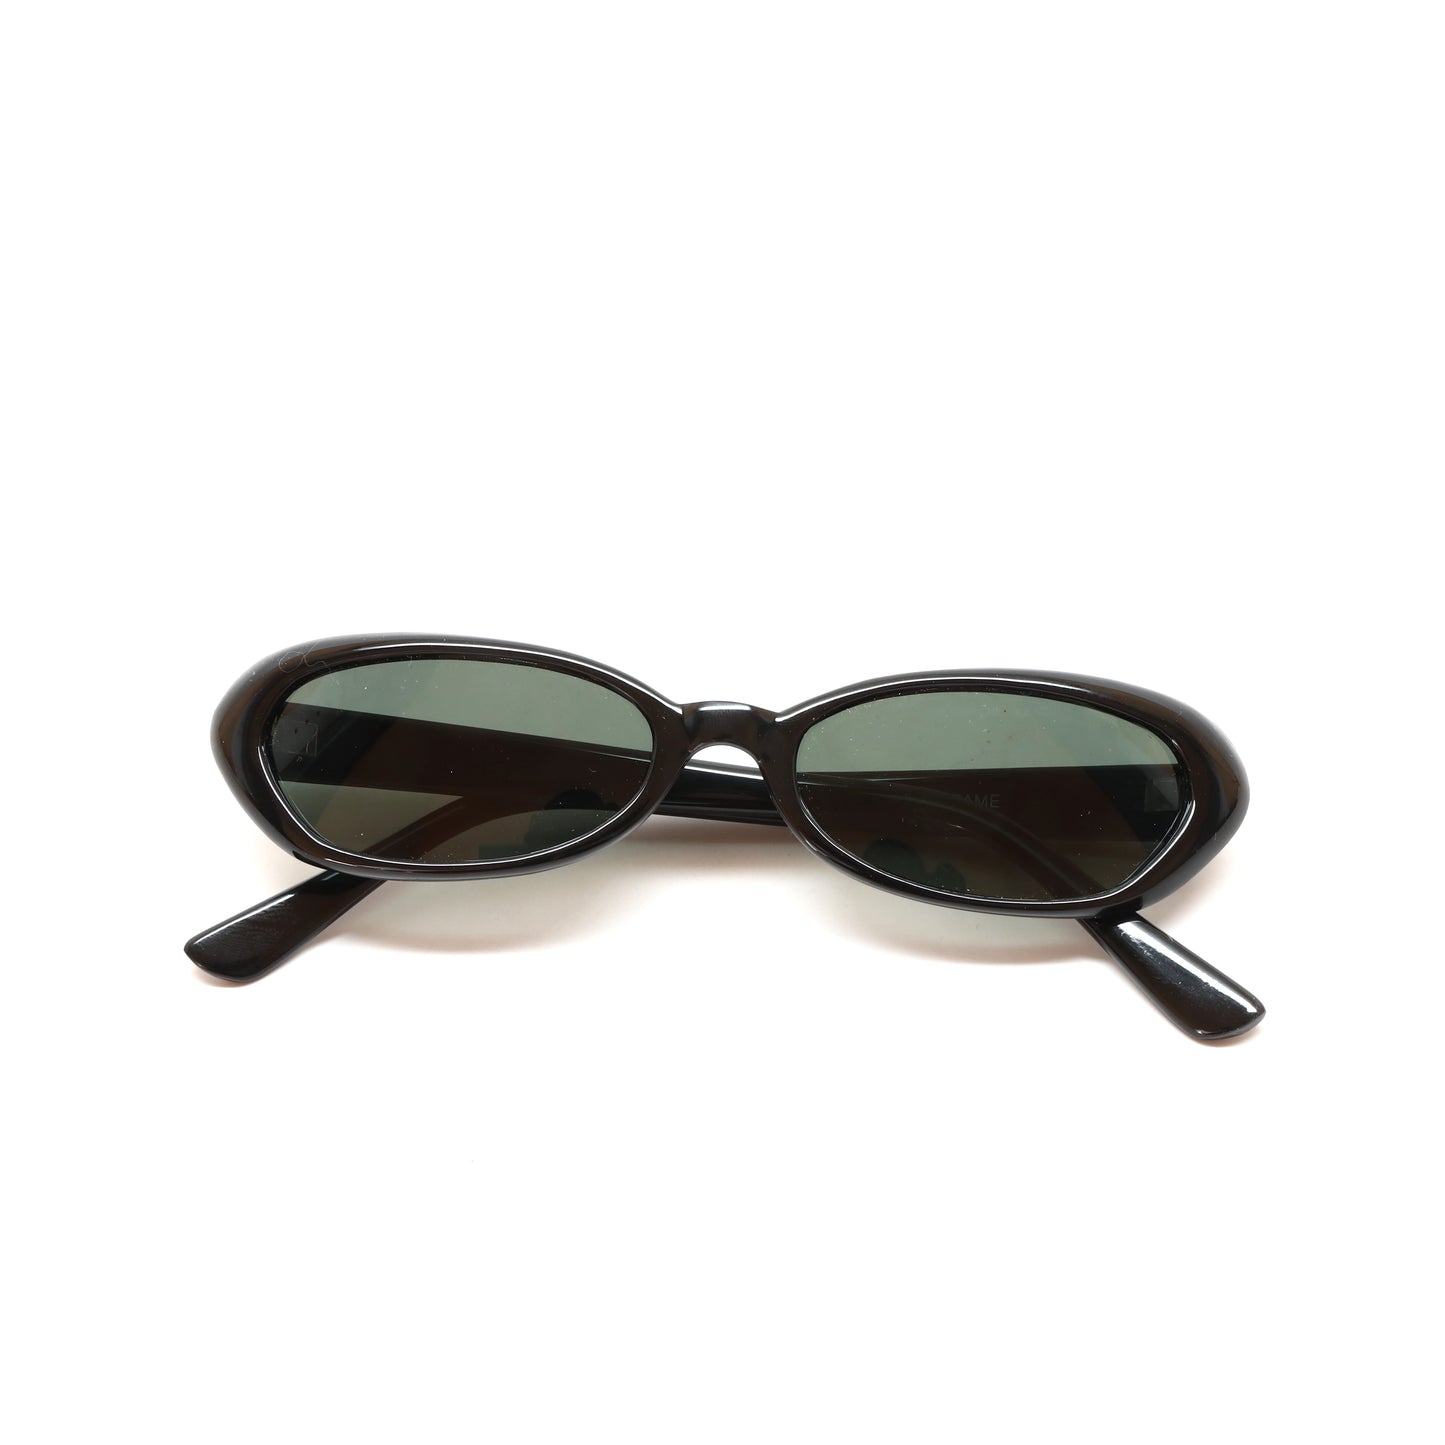 Vintage Small Sized Thin Narrow Shape Redondo Sunglasses - Black